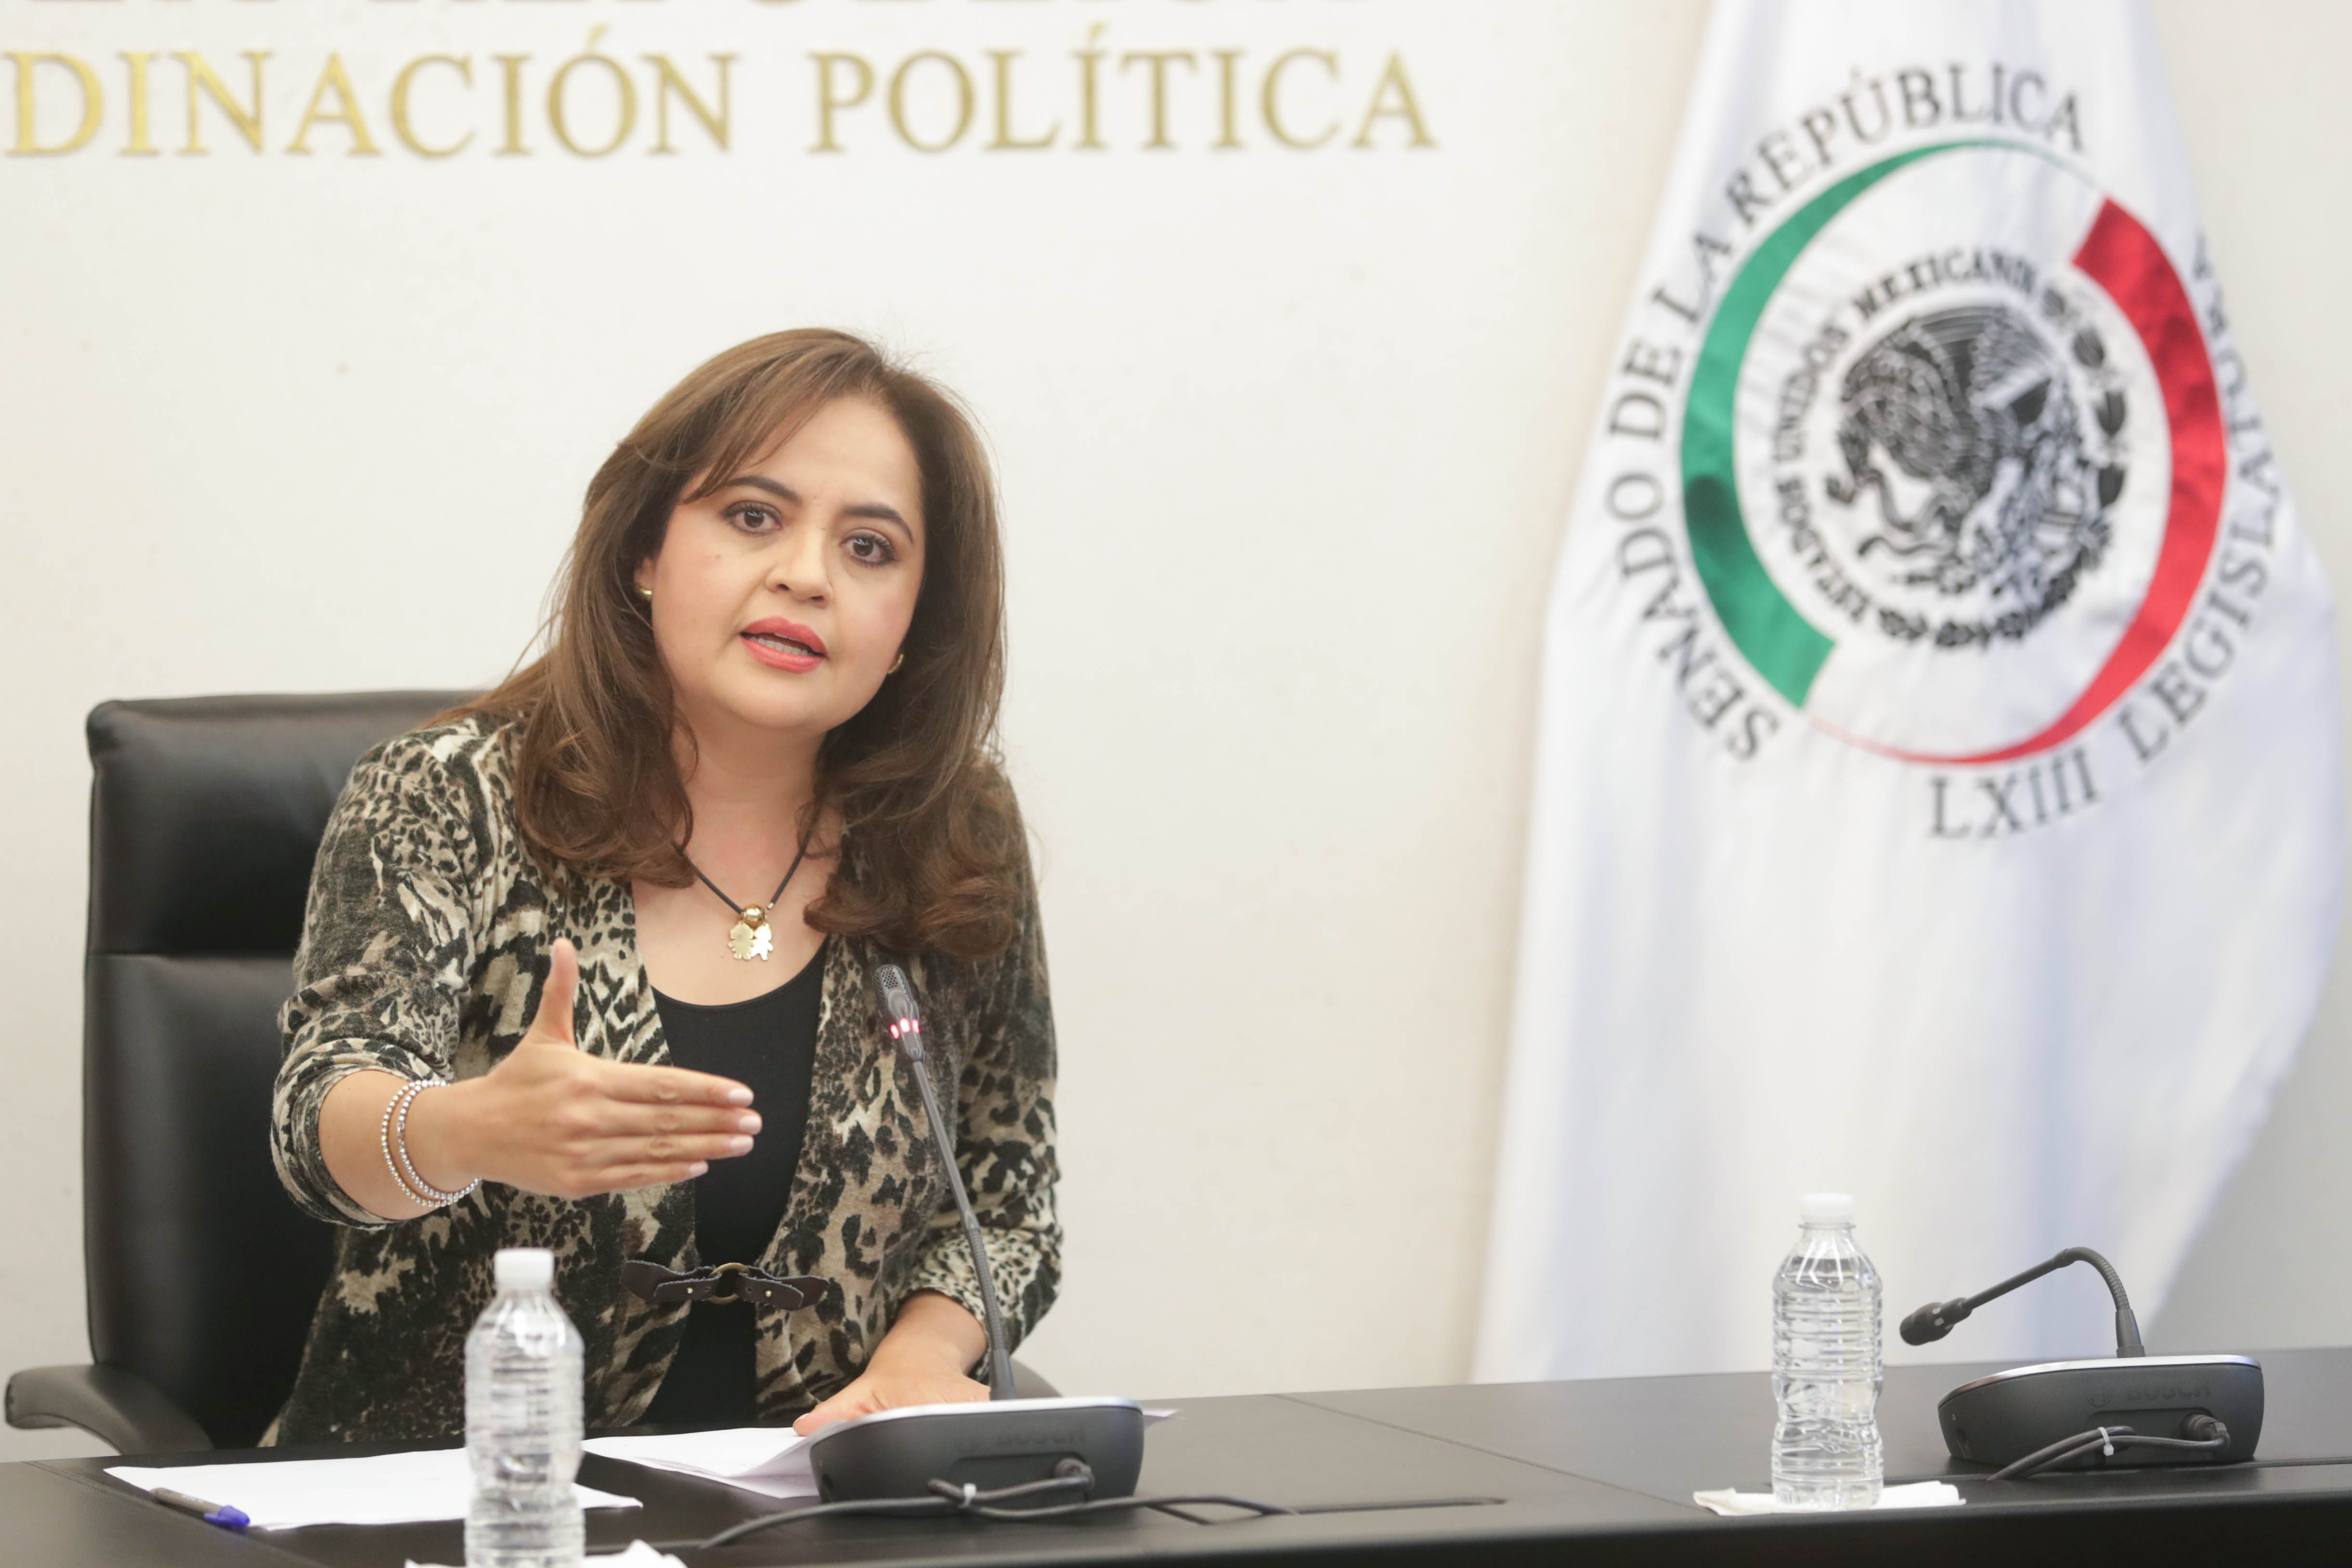  Designación en Banxico garantizará fortaleza macroeconómica: Ana Lilia Herrera